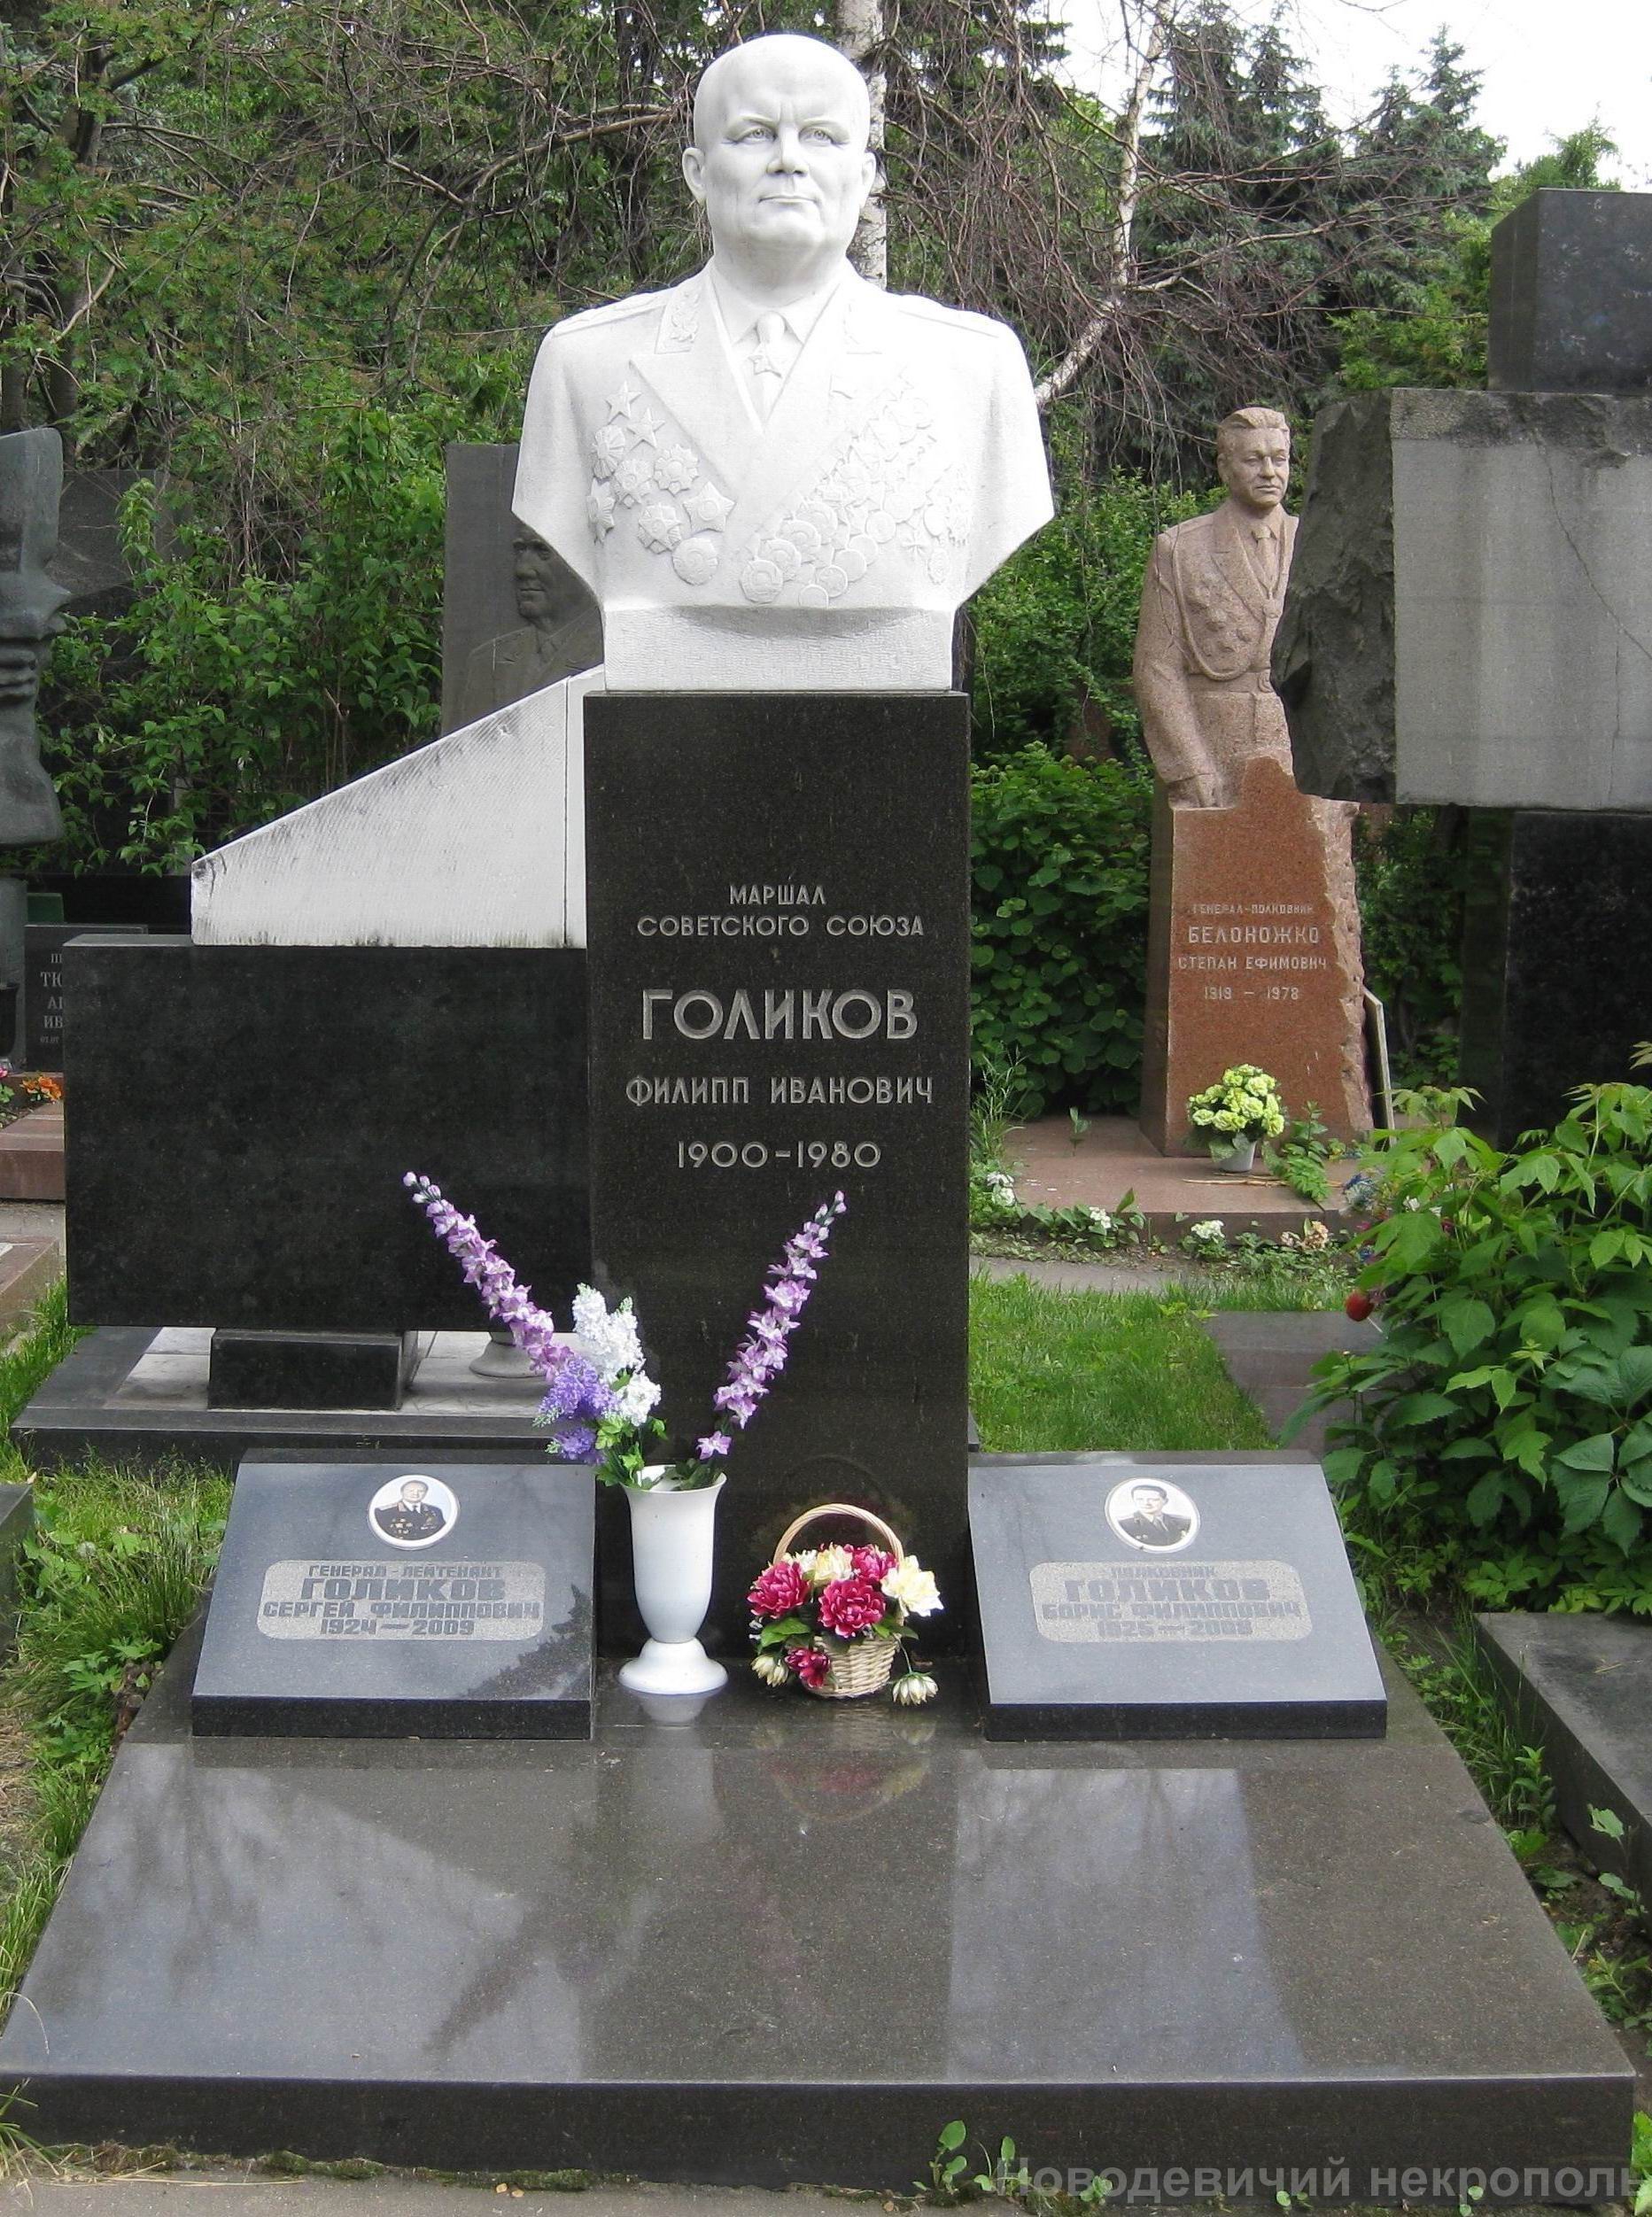 Памятник на могиле Голикова Ф.И. (1900-1980), ск. В.Сонин, арх. Е.Ефремов, на Новодевичьем кладбище (7-16-19).